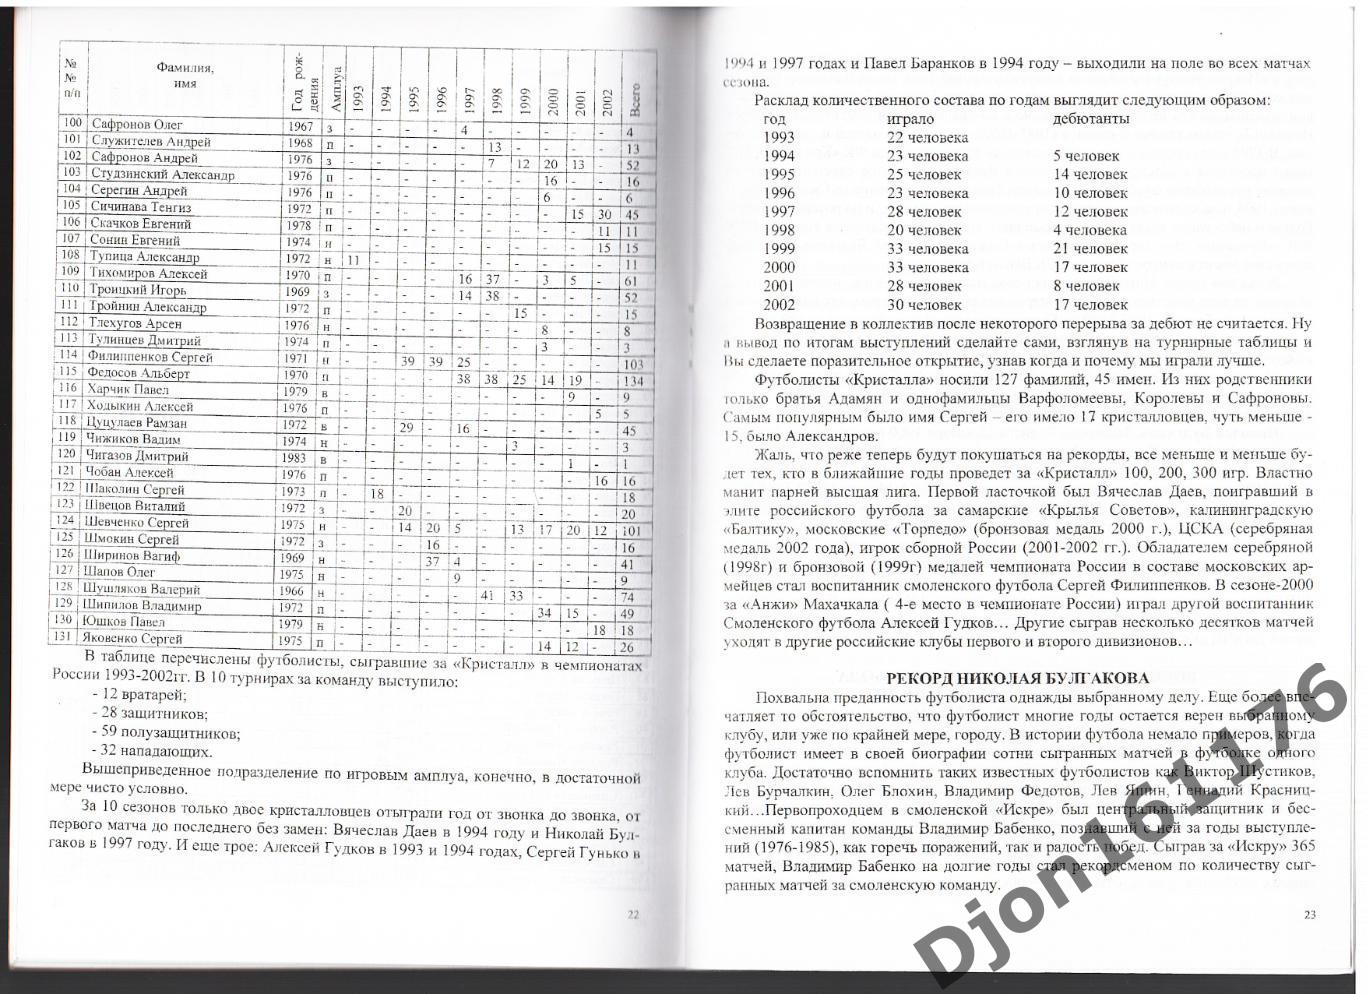 «ФК «Кристалл» 10 лет в большом футболе (1993-2002 г.г.)». 2